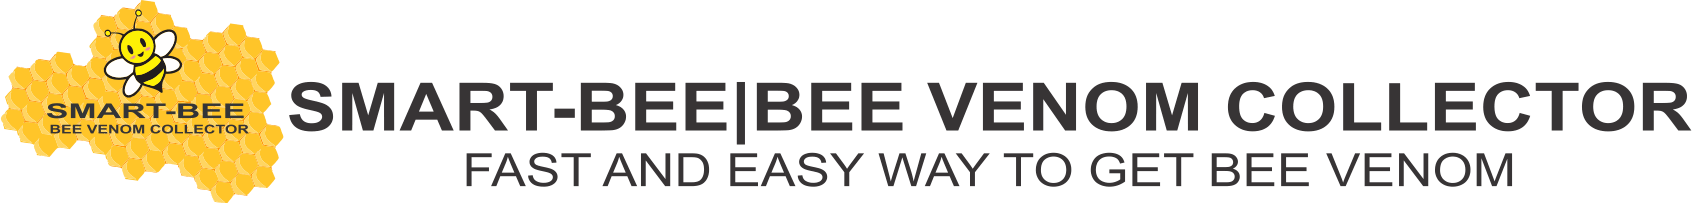 BEE VENOM COLLECTOR | SMART-BEE